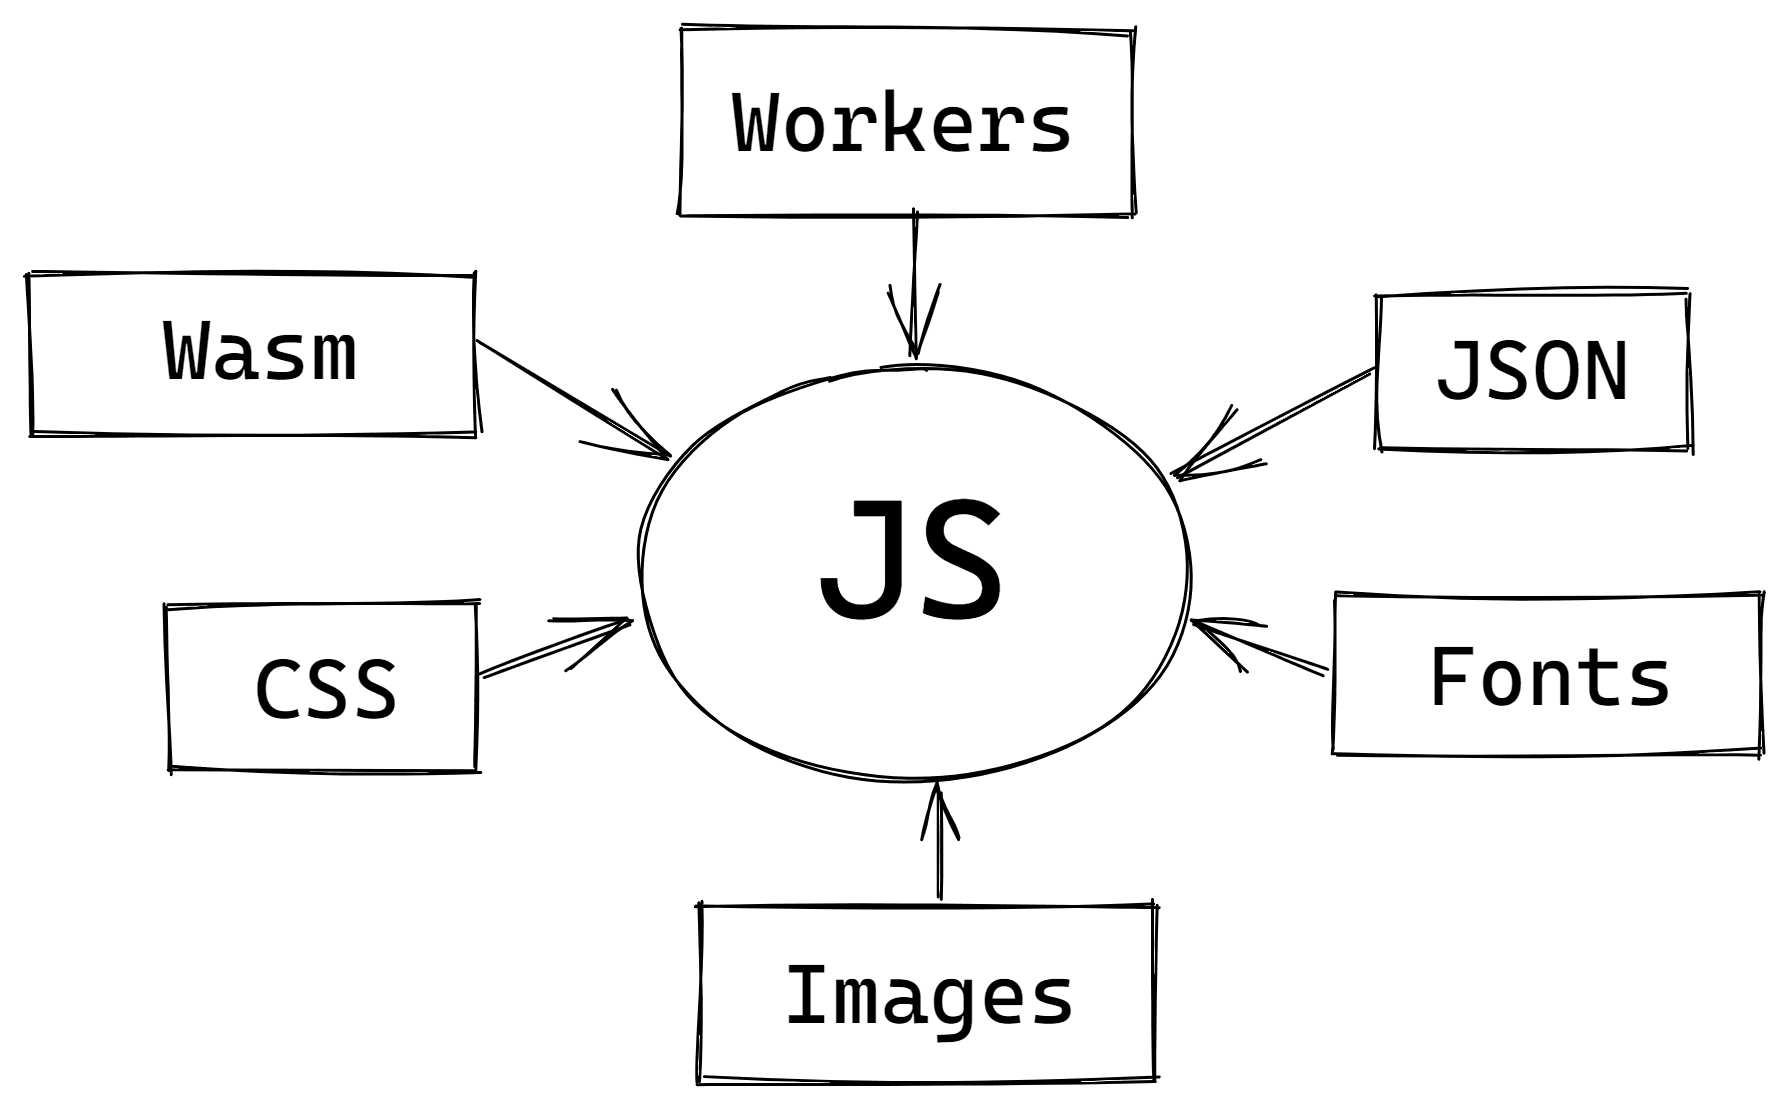 הצגה בגרף של סוגים שונים של נכסים שיובאו ל-JS.